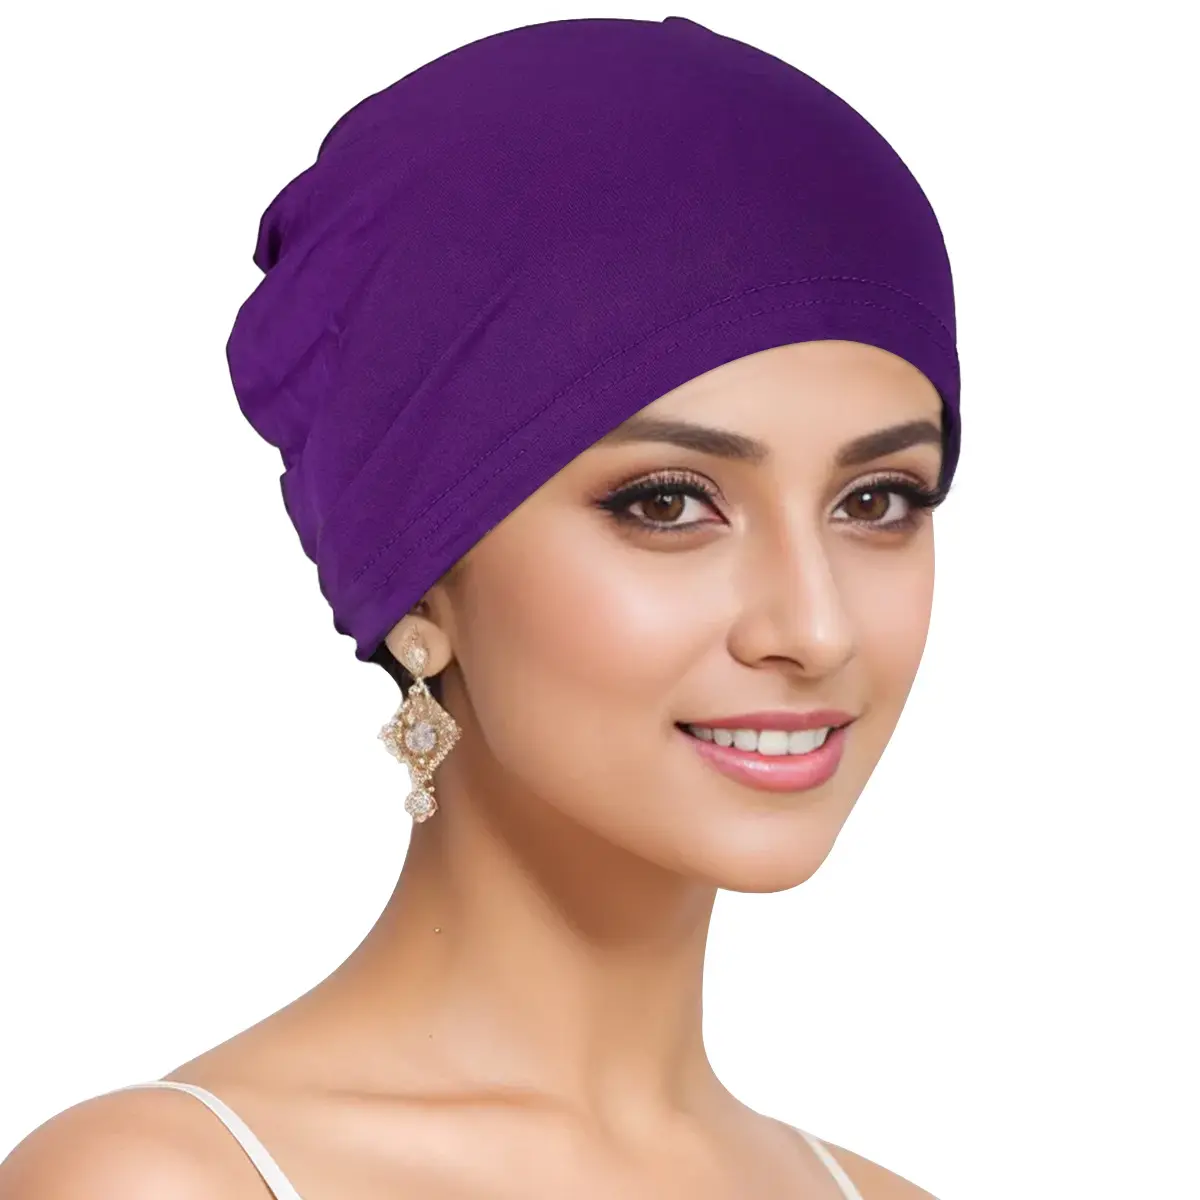 FF2490 müslüman kadınlar altında eşarp başörtüsü kap islam türban şapka kaput kap kadın streç başörtüsü Undercap